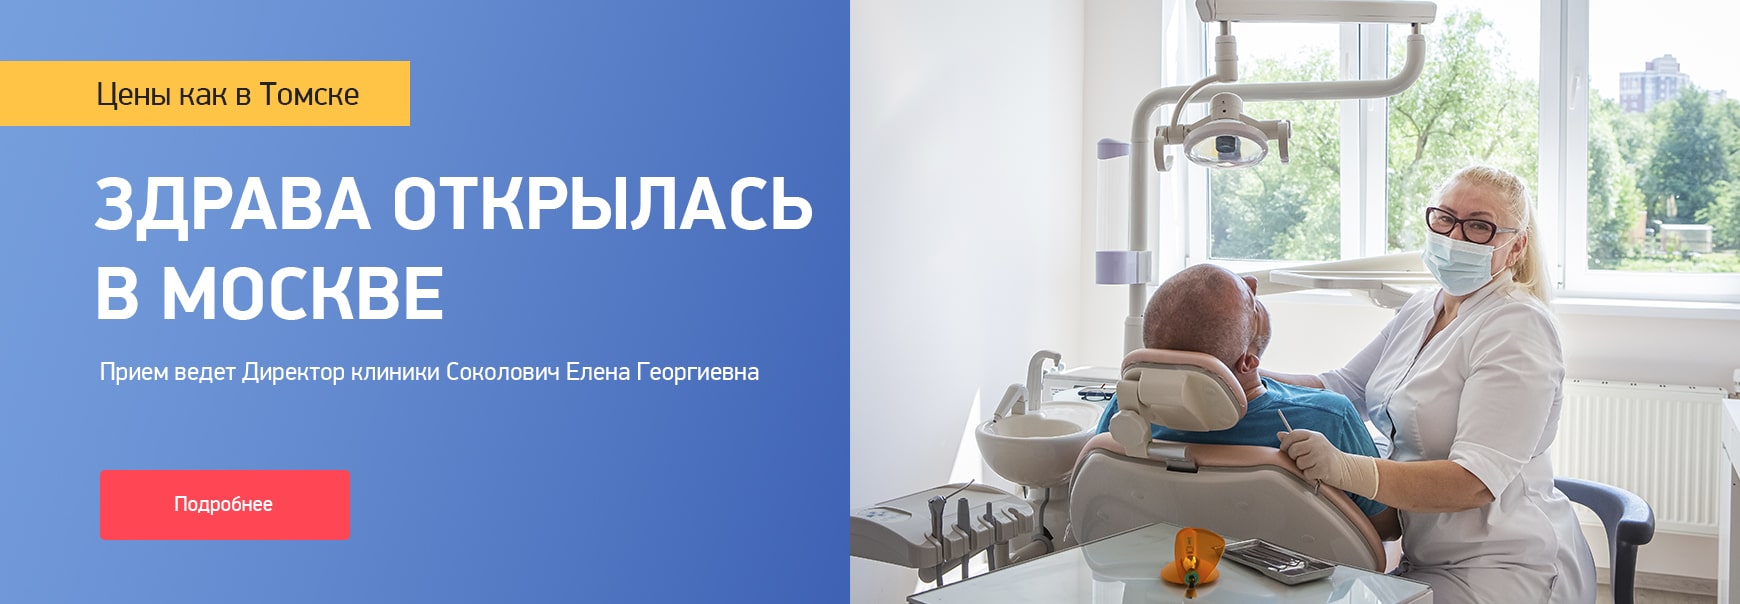 Стоматологические клиники томска цены Снятие зубных отложений Томск Ракетная